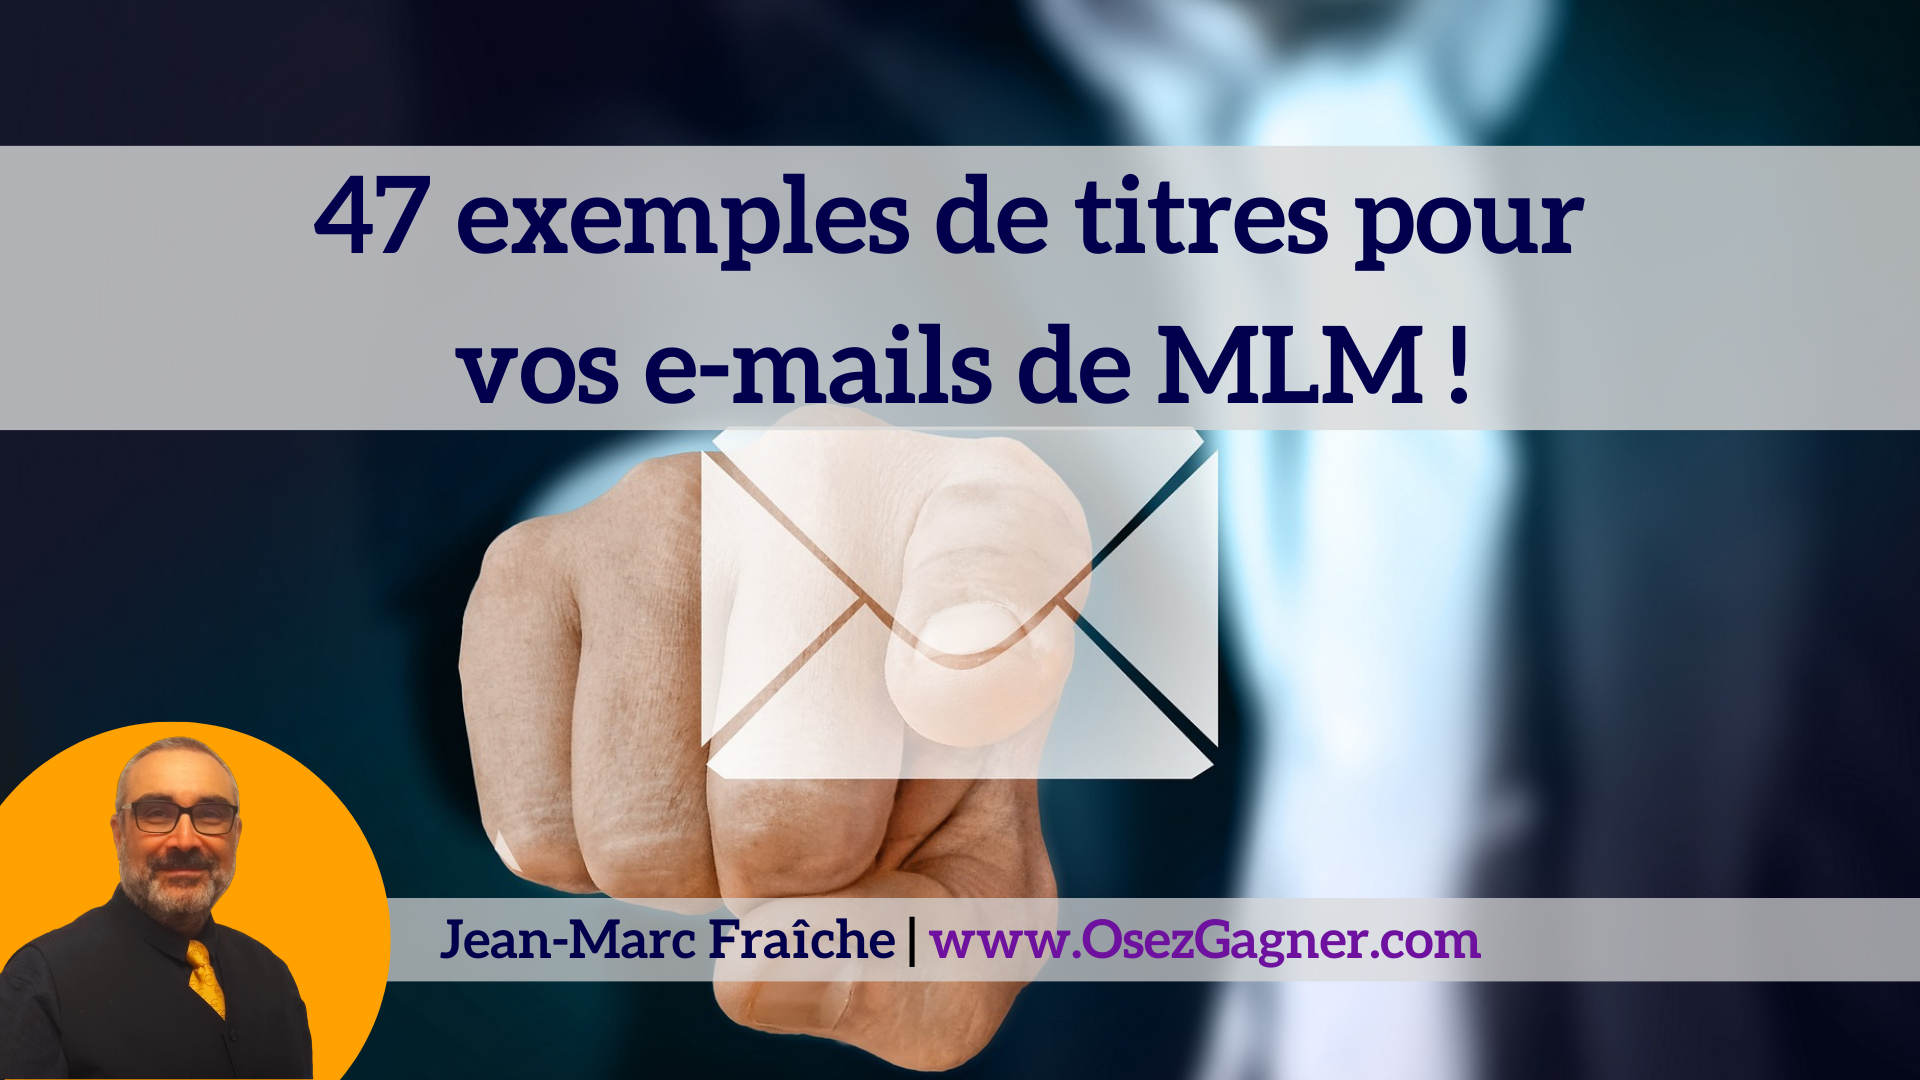 47-exemples-de-titres-pour-vos-emails-mlm-Jean-Marc-Fraiche-OsezGagner.com